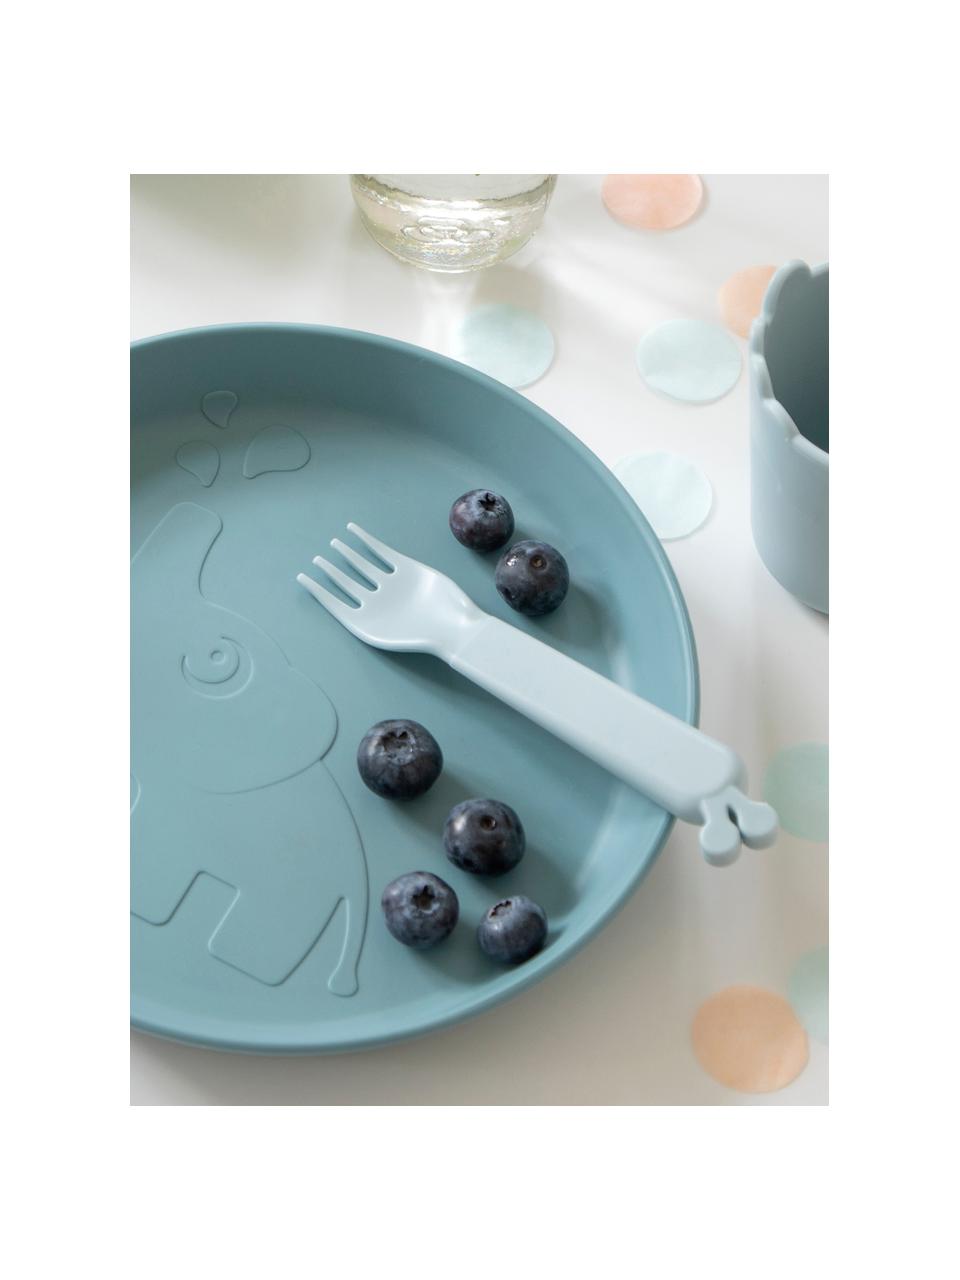 Set de tenedores Kiddish, 4 uds., Plástico, Azul claro, azul petróleo, L 13 cm